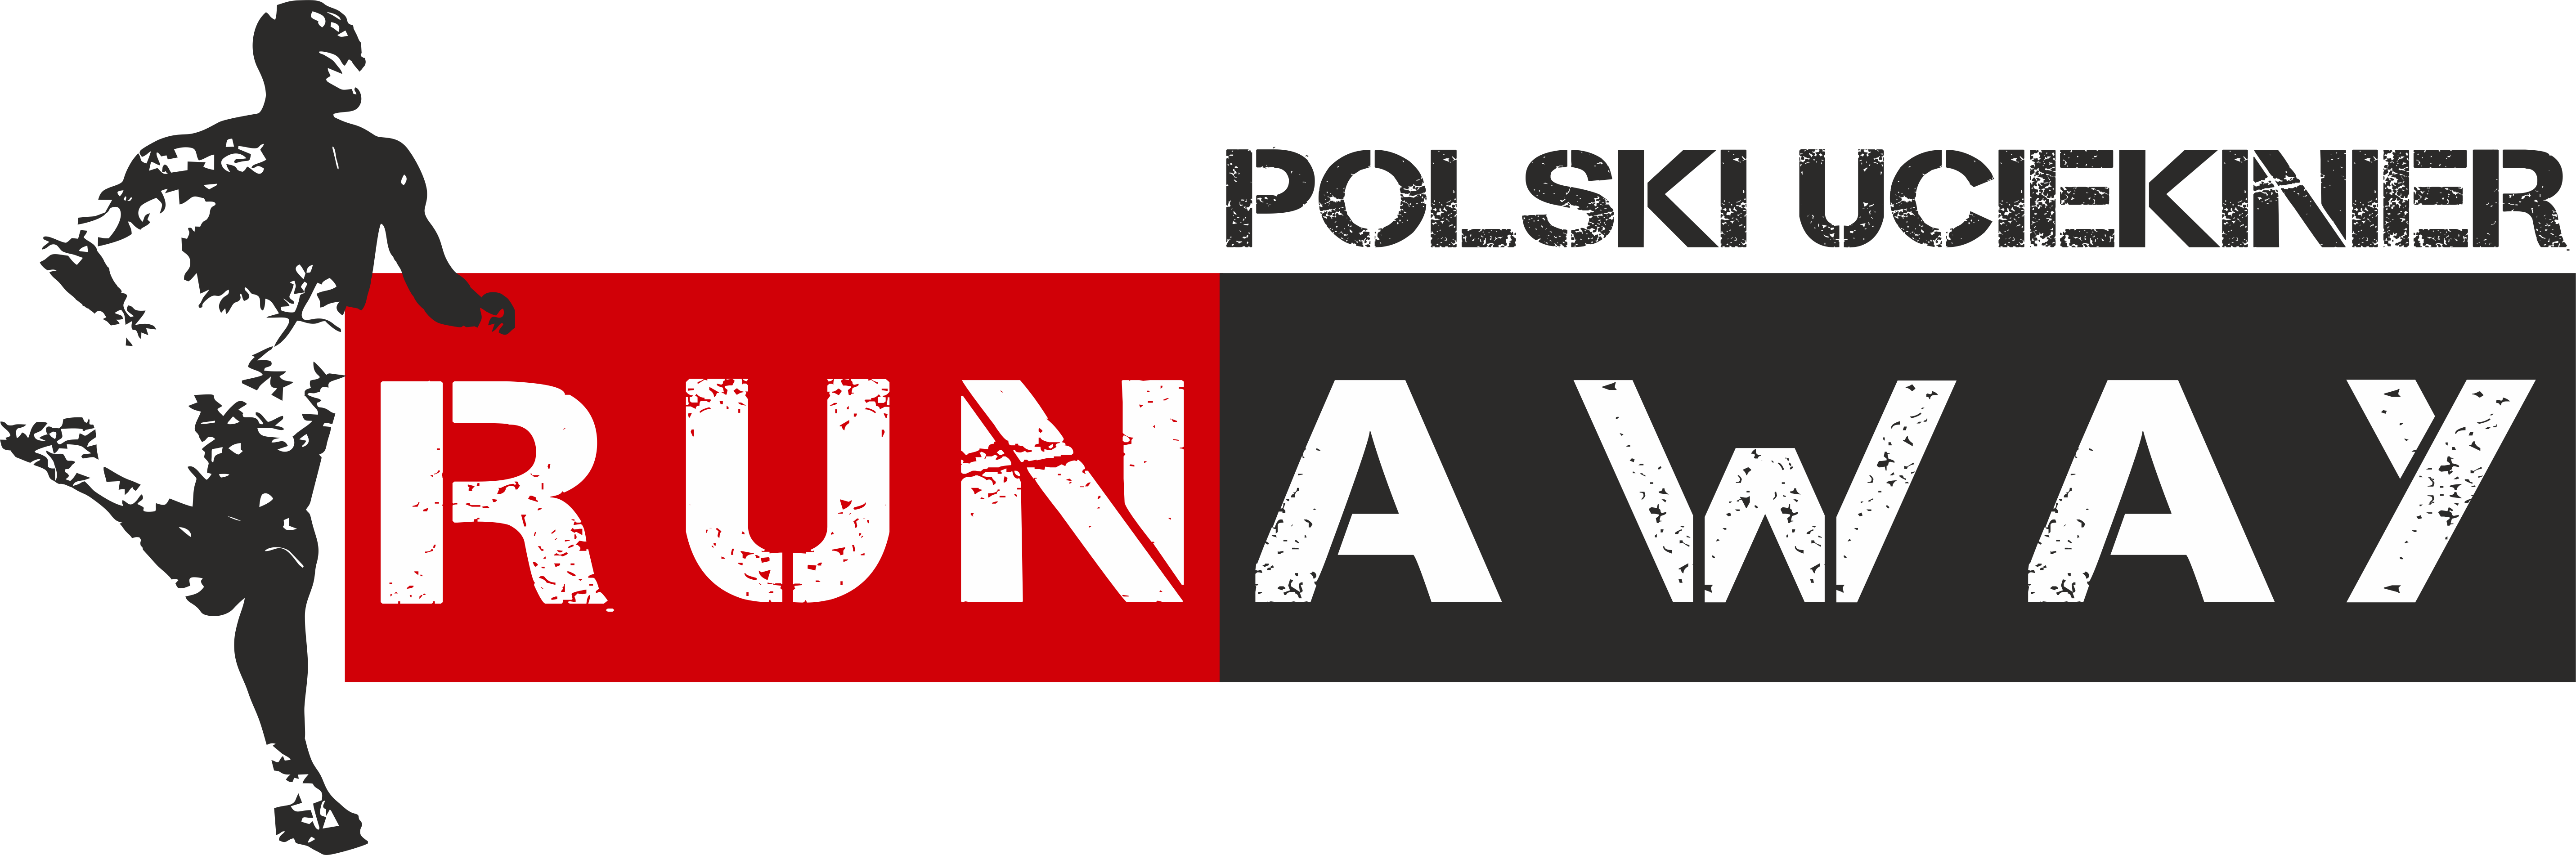 Runaway Polski Uciekinier Śrem